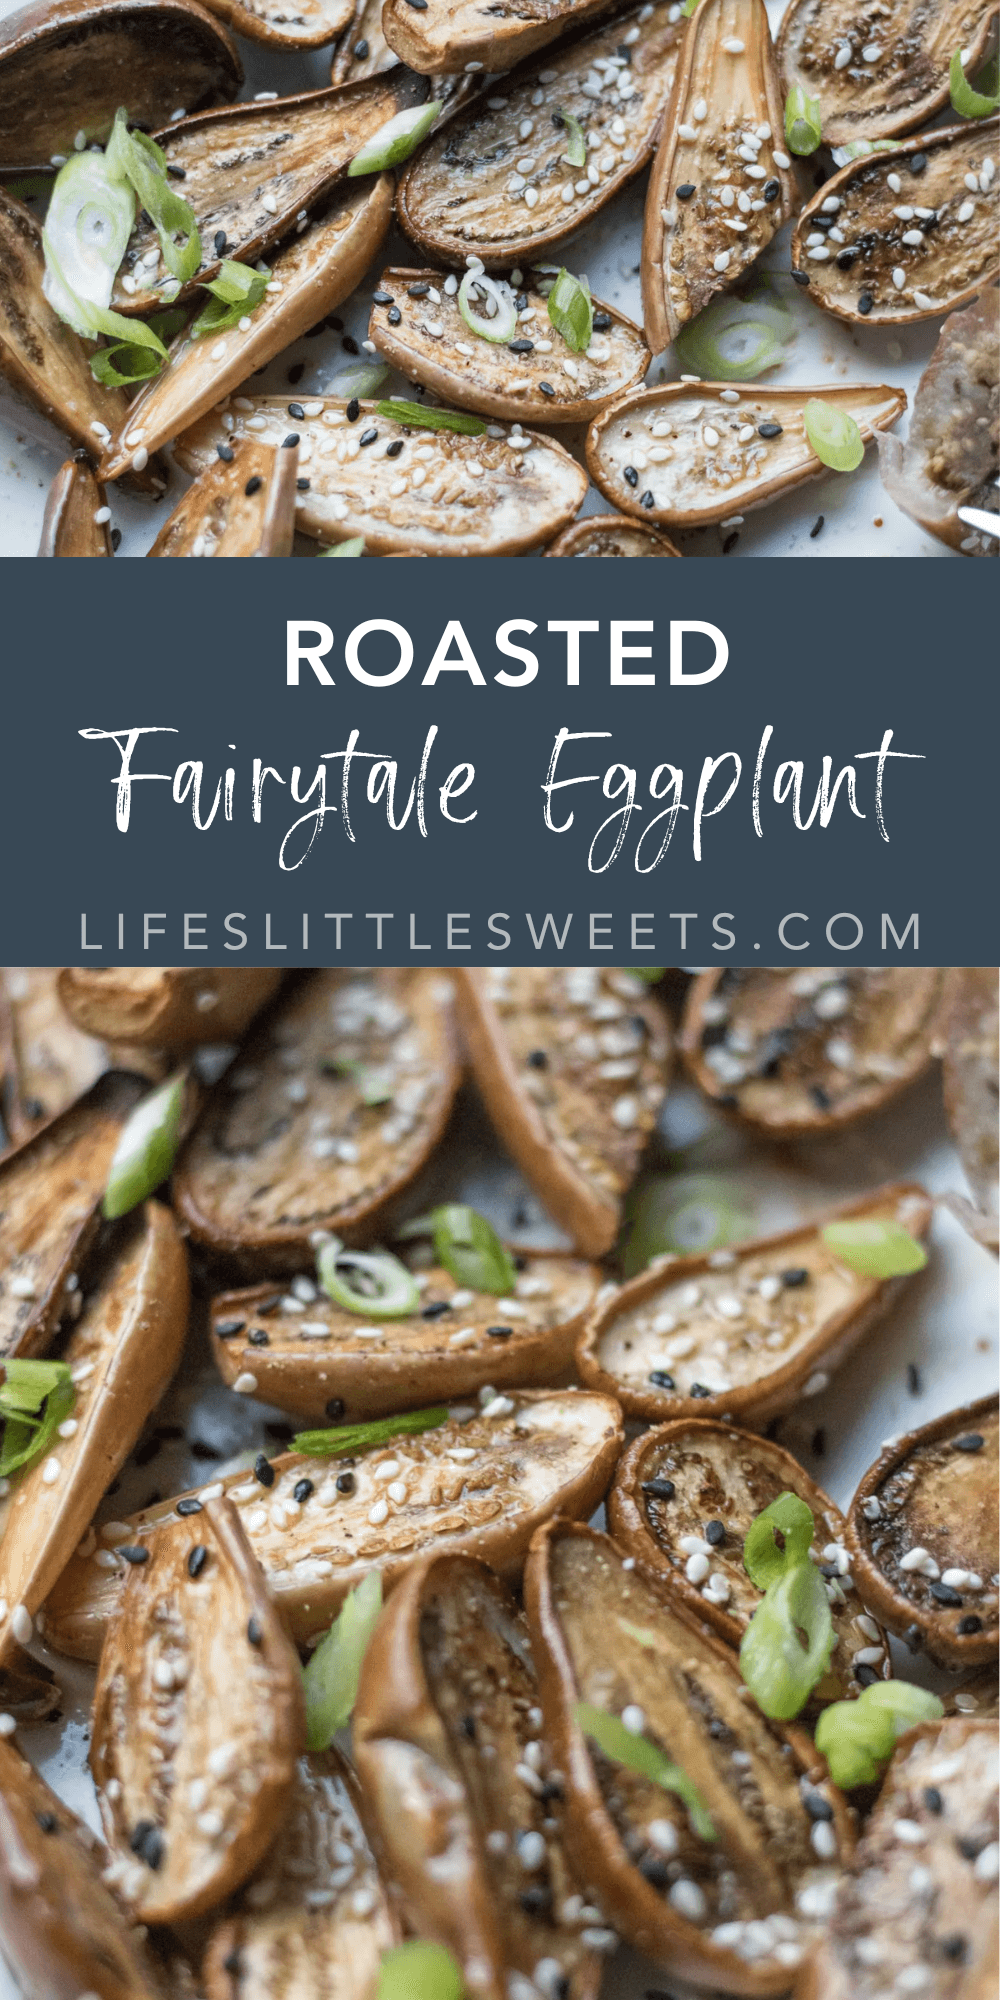 Roasted Fairytale Eggplant with text overlay